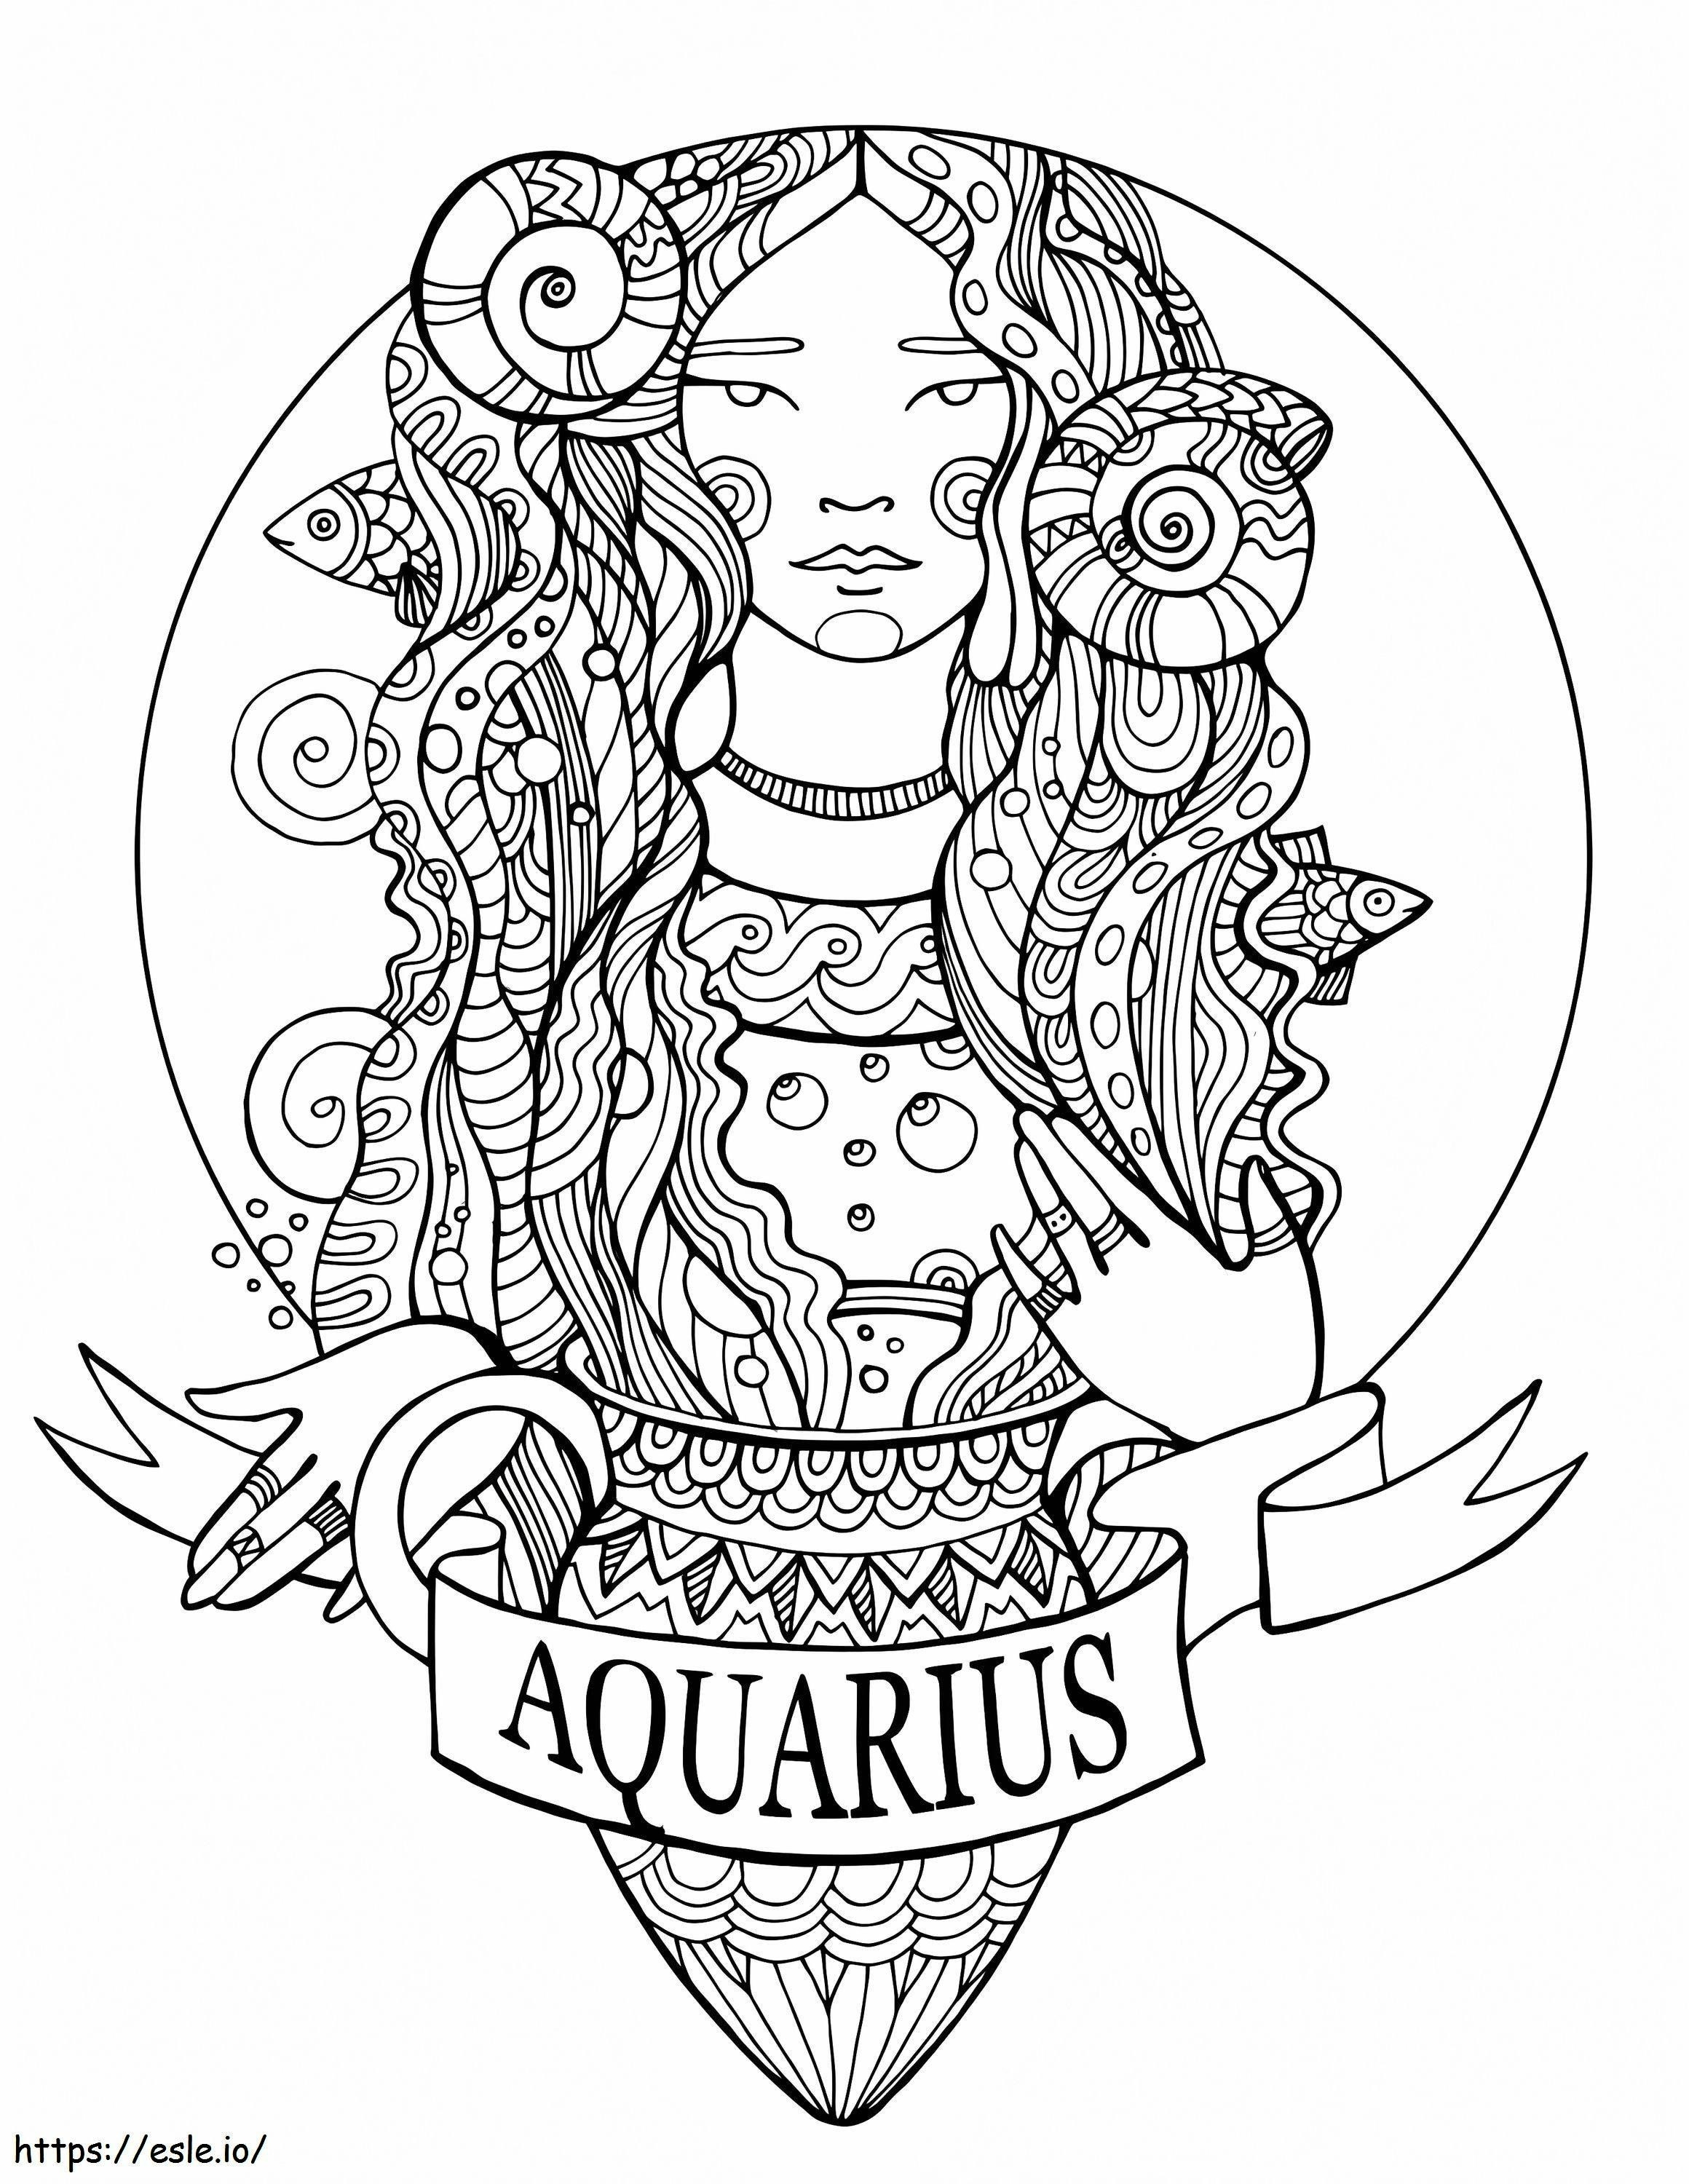 Fantasy Aquarius coloring page